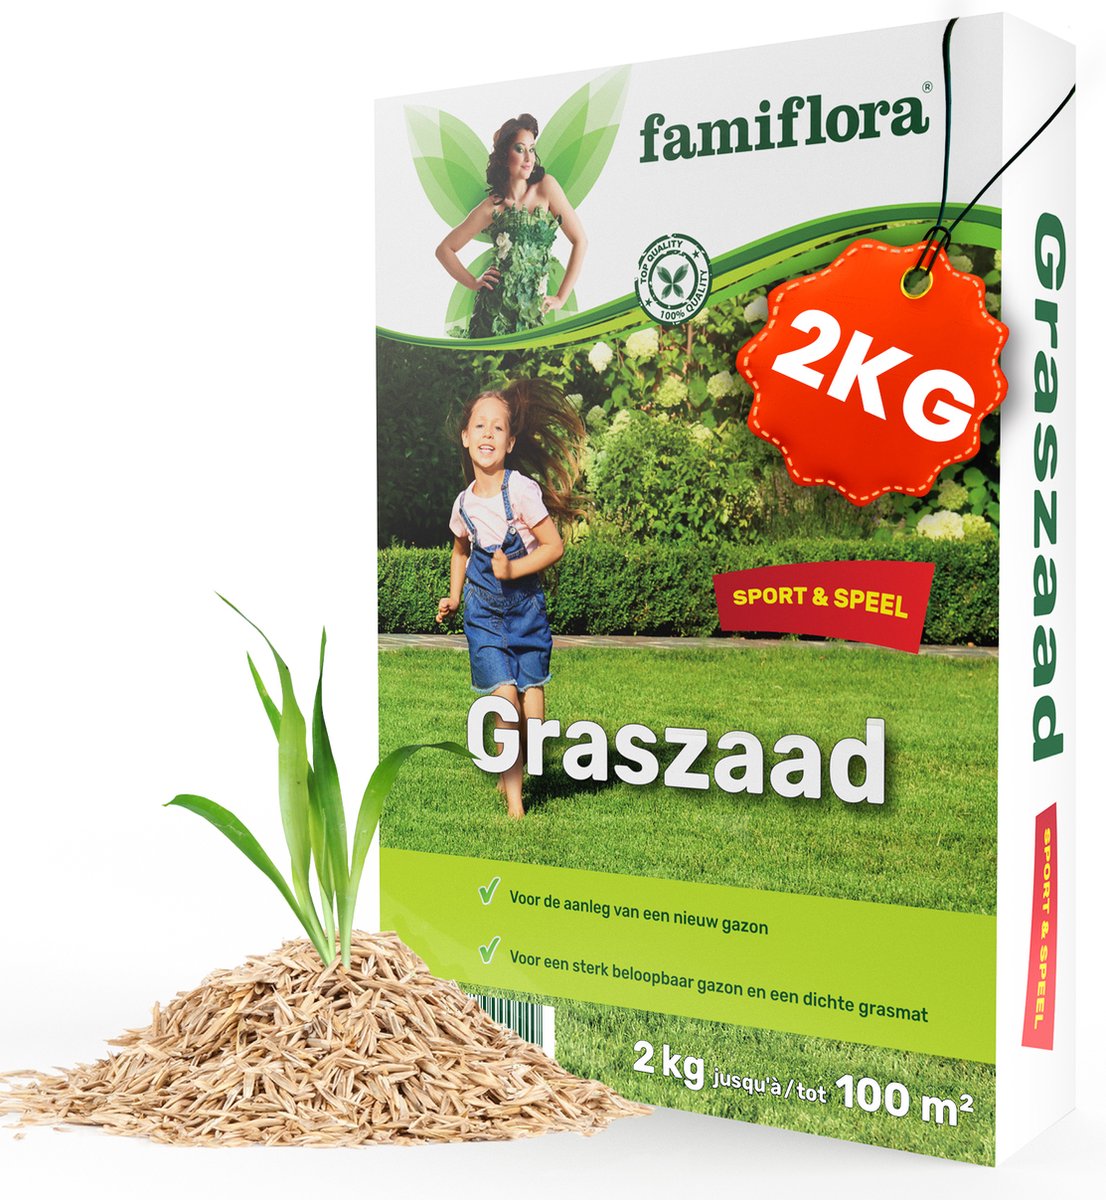 Famiflora Graszaad Speel & Sport - Sterk Graszaad voor Speelgazon en Sportgazon - 2 kg voor 100m² - Met Coating - Famiflora